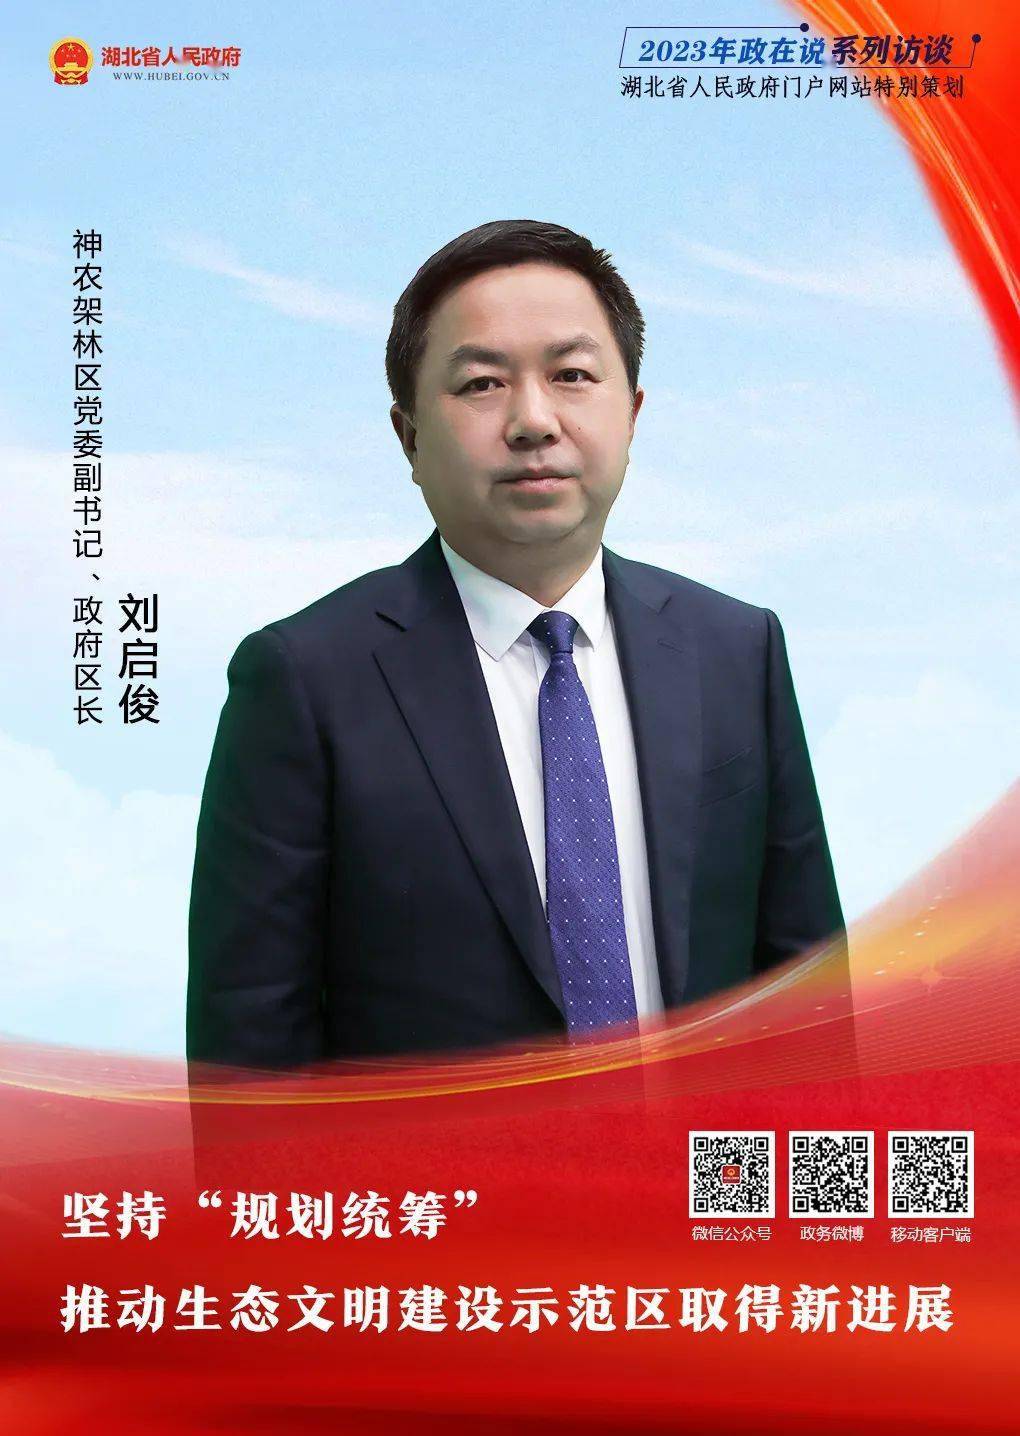 12月23日,神农架林区党委副书记,政府区长刘启俊将做客湖北省人民政府